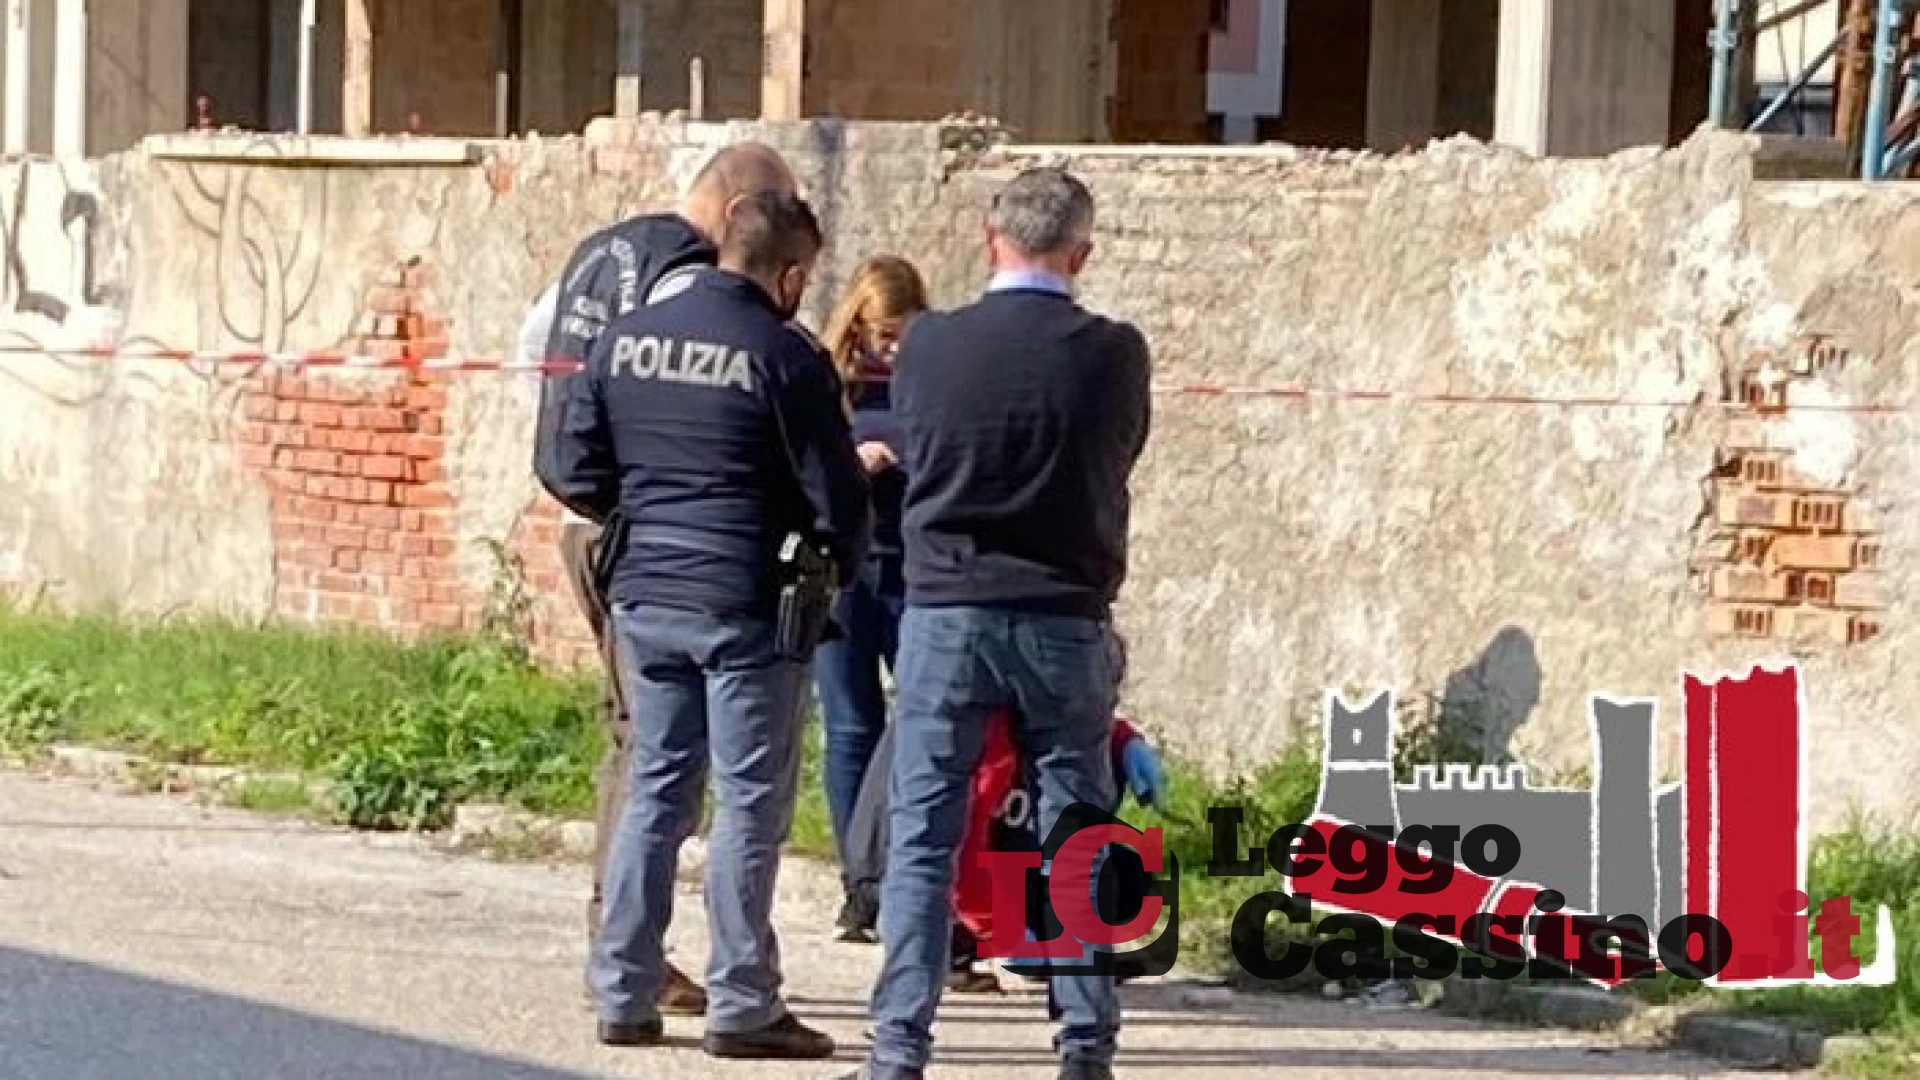 Ordigno difronte una scuola di Cassino, interviene la polizia